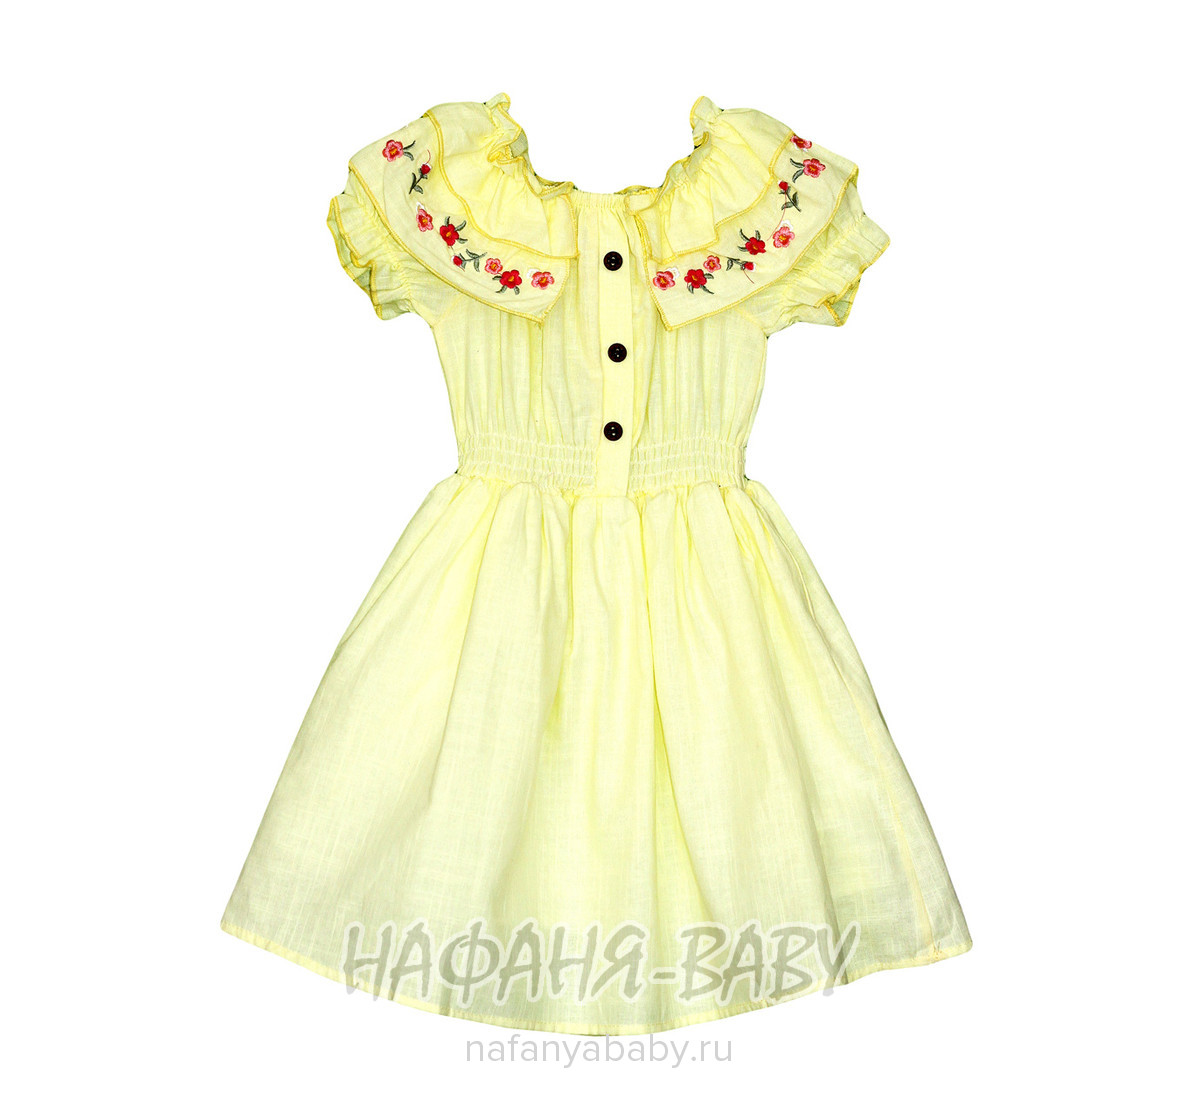 Детское платье AYCITY, купить в интернет магазине Нафаня. арт: 2802.